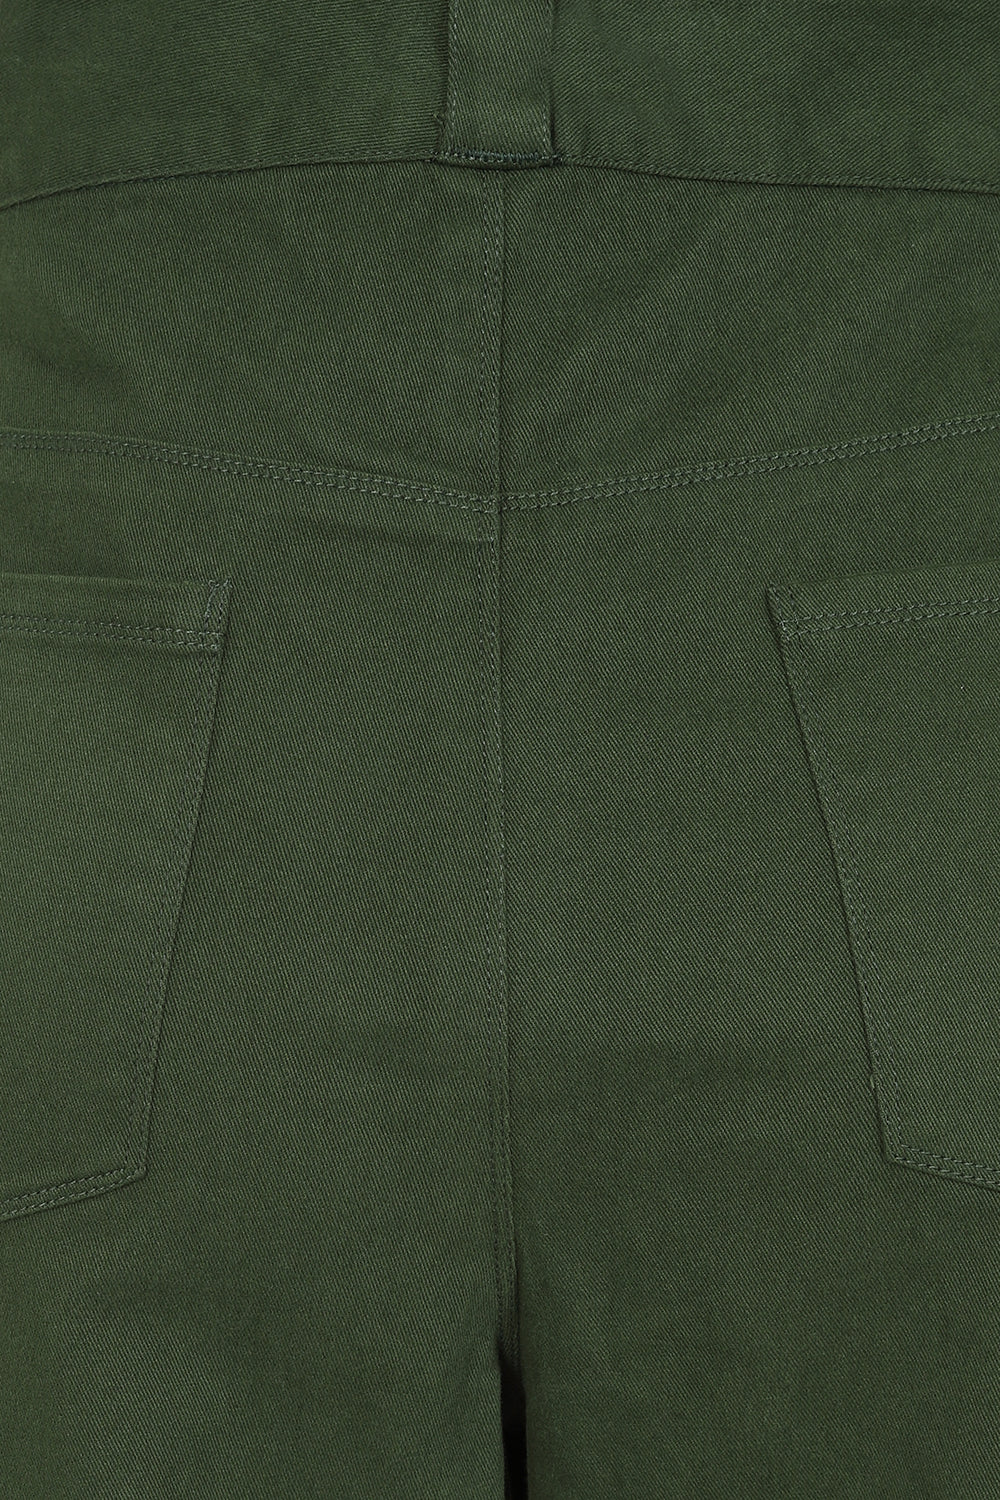 Caraway Pant - Green - Organic Cotton Jean